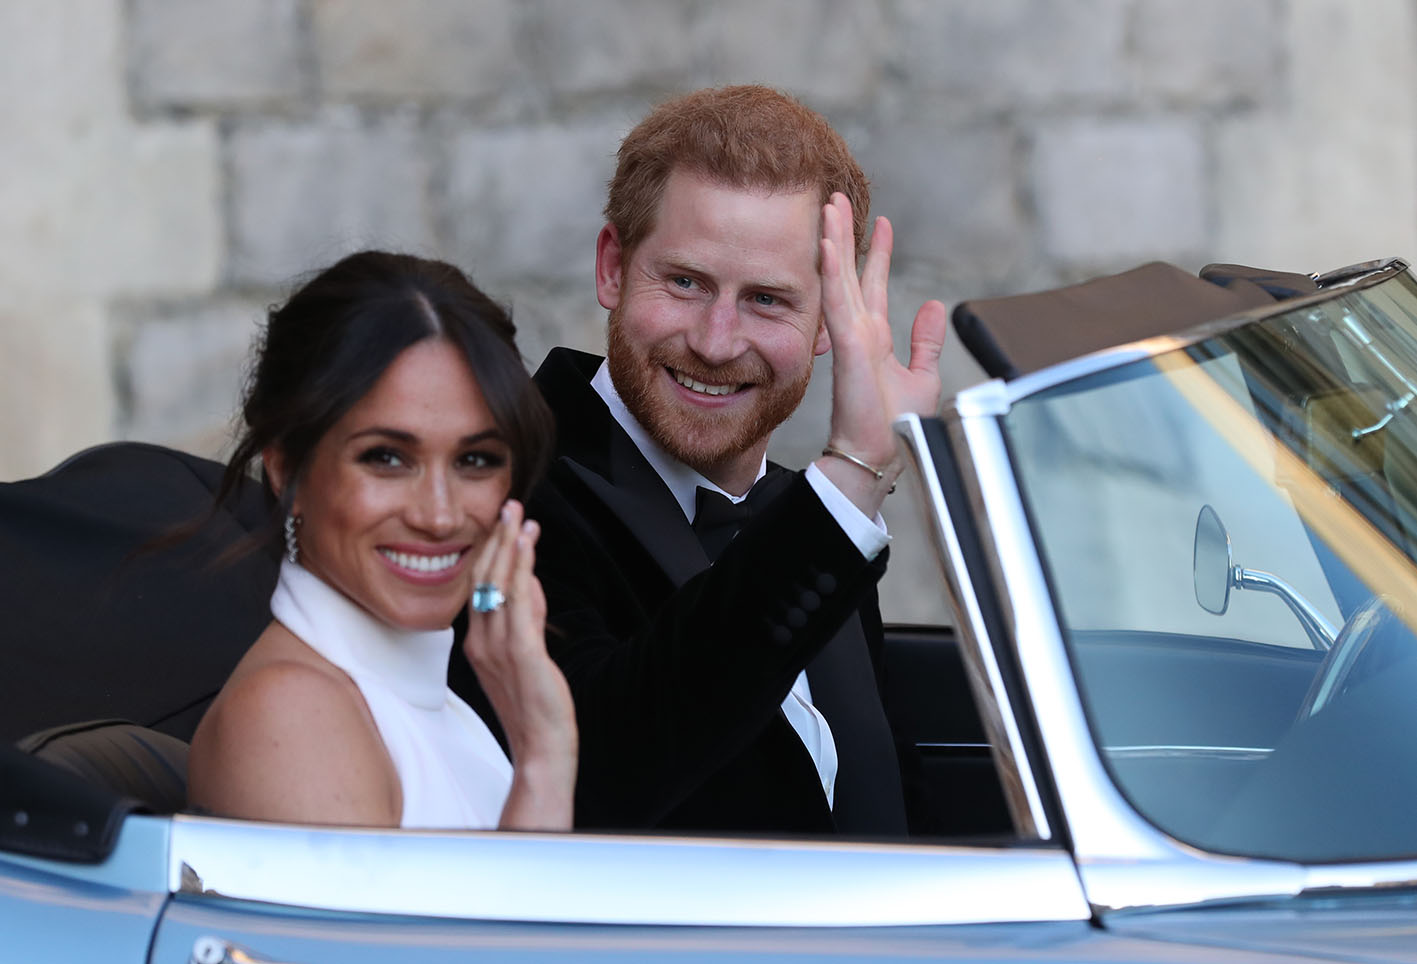 Ο πρίγκιπας Harry, Duke και η Μeghan Markle φεύγοντας από το κάστρο του Windsor μετά τον γάμο τους για να παρευρεθούν στη ρεσεψιόν στις 19 Μαΐου 2018 στο παλάτι Windsor.